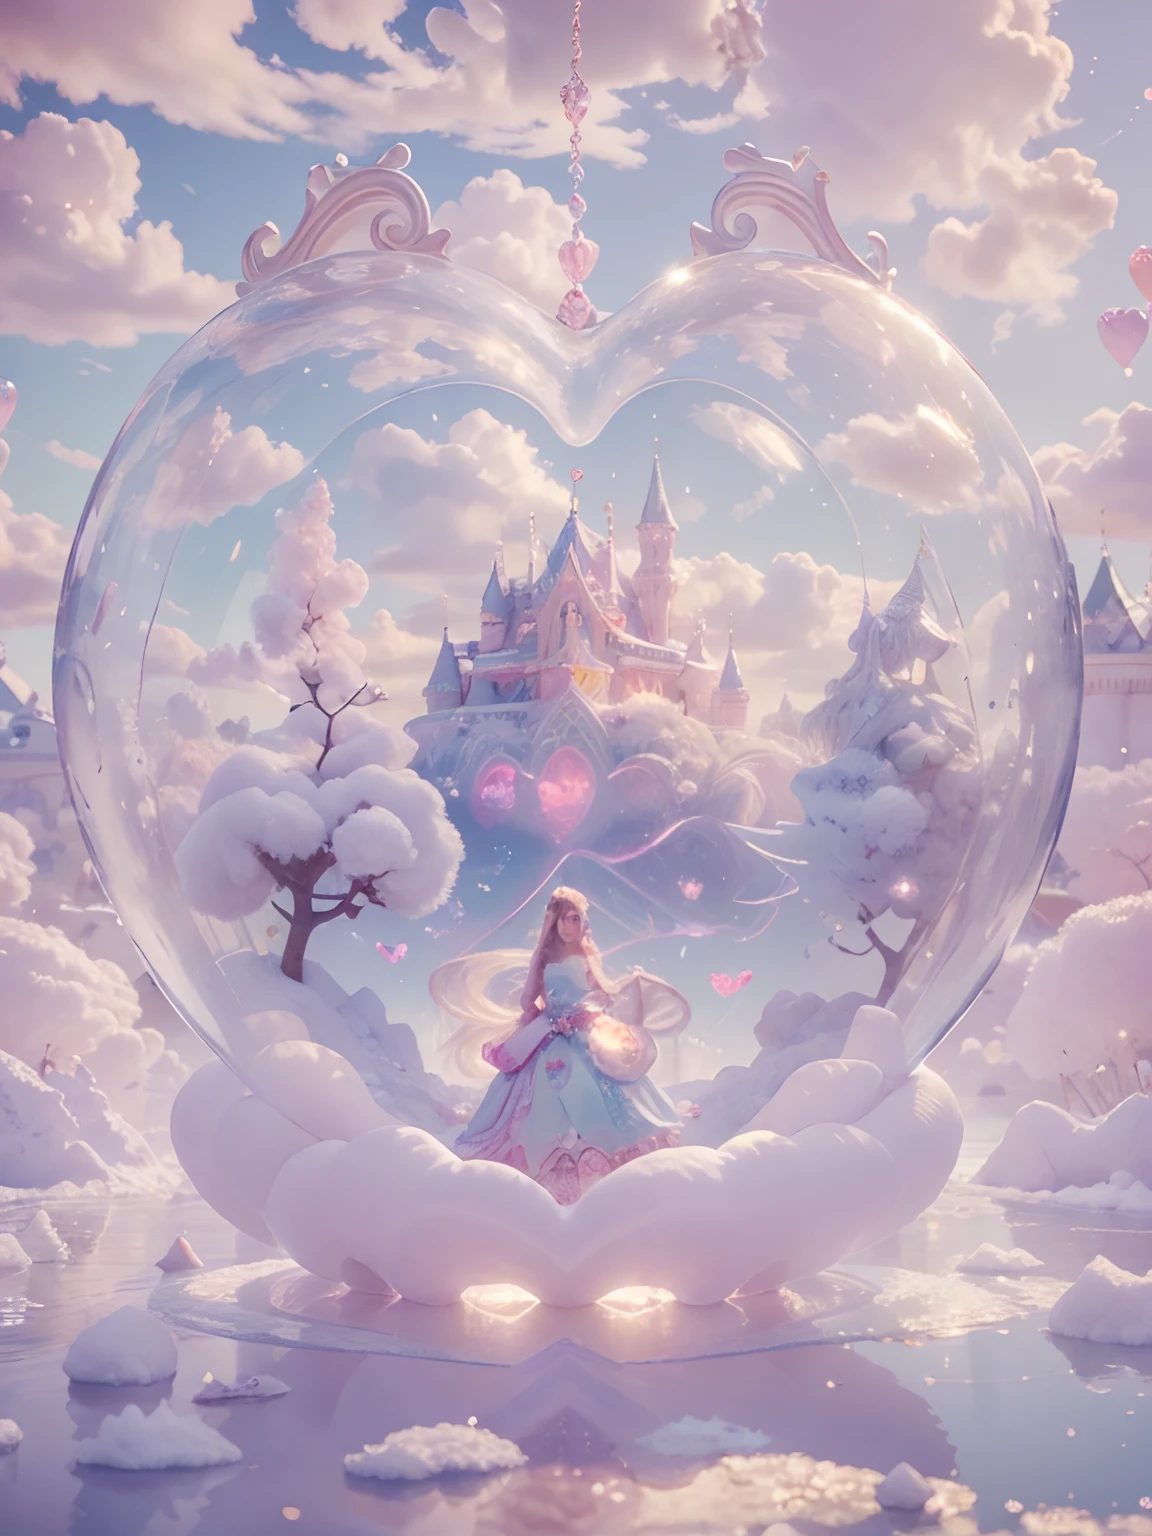 ハート型の泡の中に、綿菓子の女王の女性女神が8K解像度でレンダリングされ、超リアルで精巧なディテールが、冷たいハート型の氷の泡の中に住んでいます。, 城がたくさんある幻想的な場所, 綿菓子, 白鳥の湖とふわふわの雲, コンピュータプログラミングの複雑な視覚的表現, 24K解像度で精巧なディテールとシンボルをレンダリング.